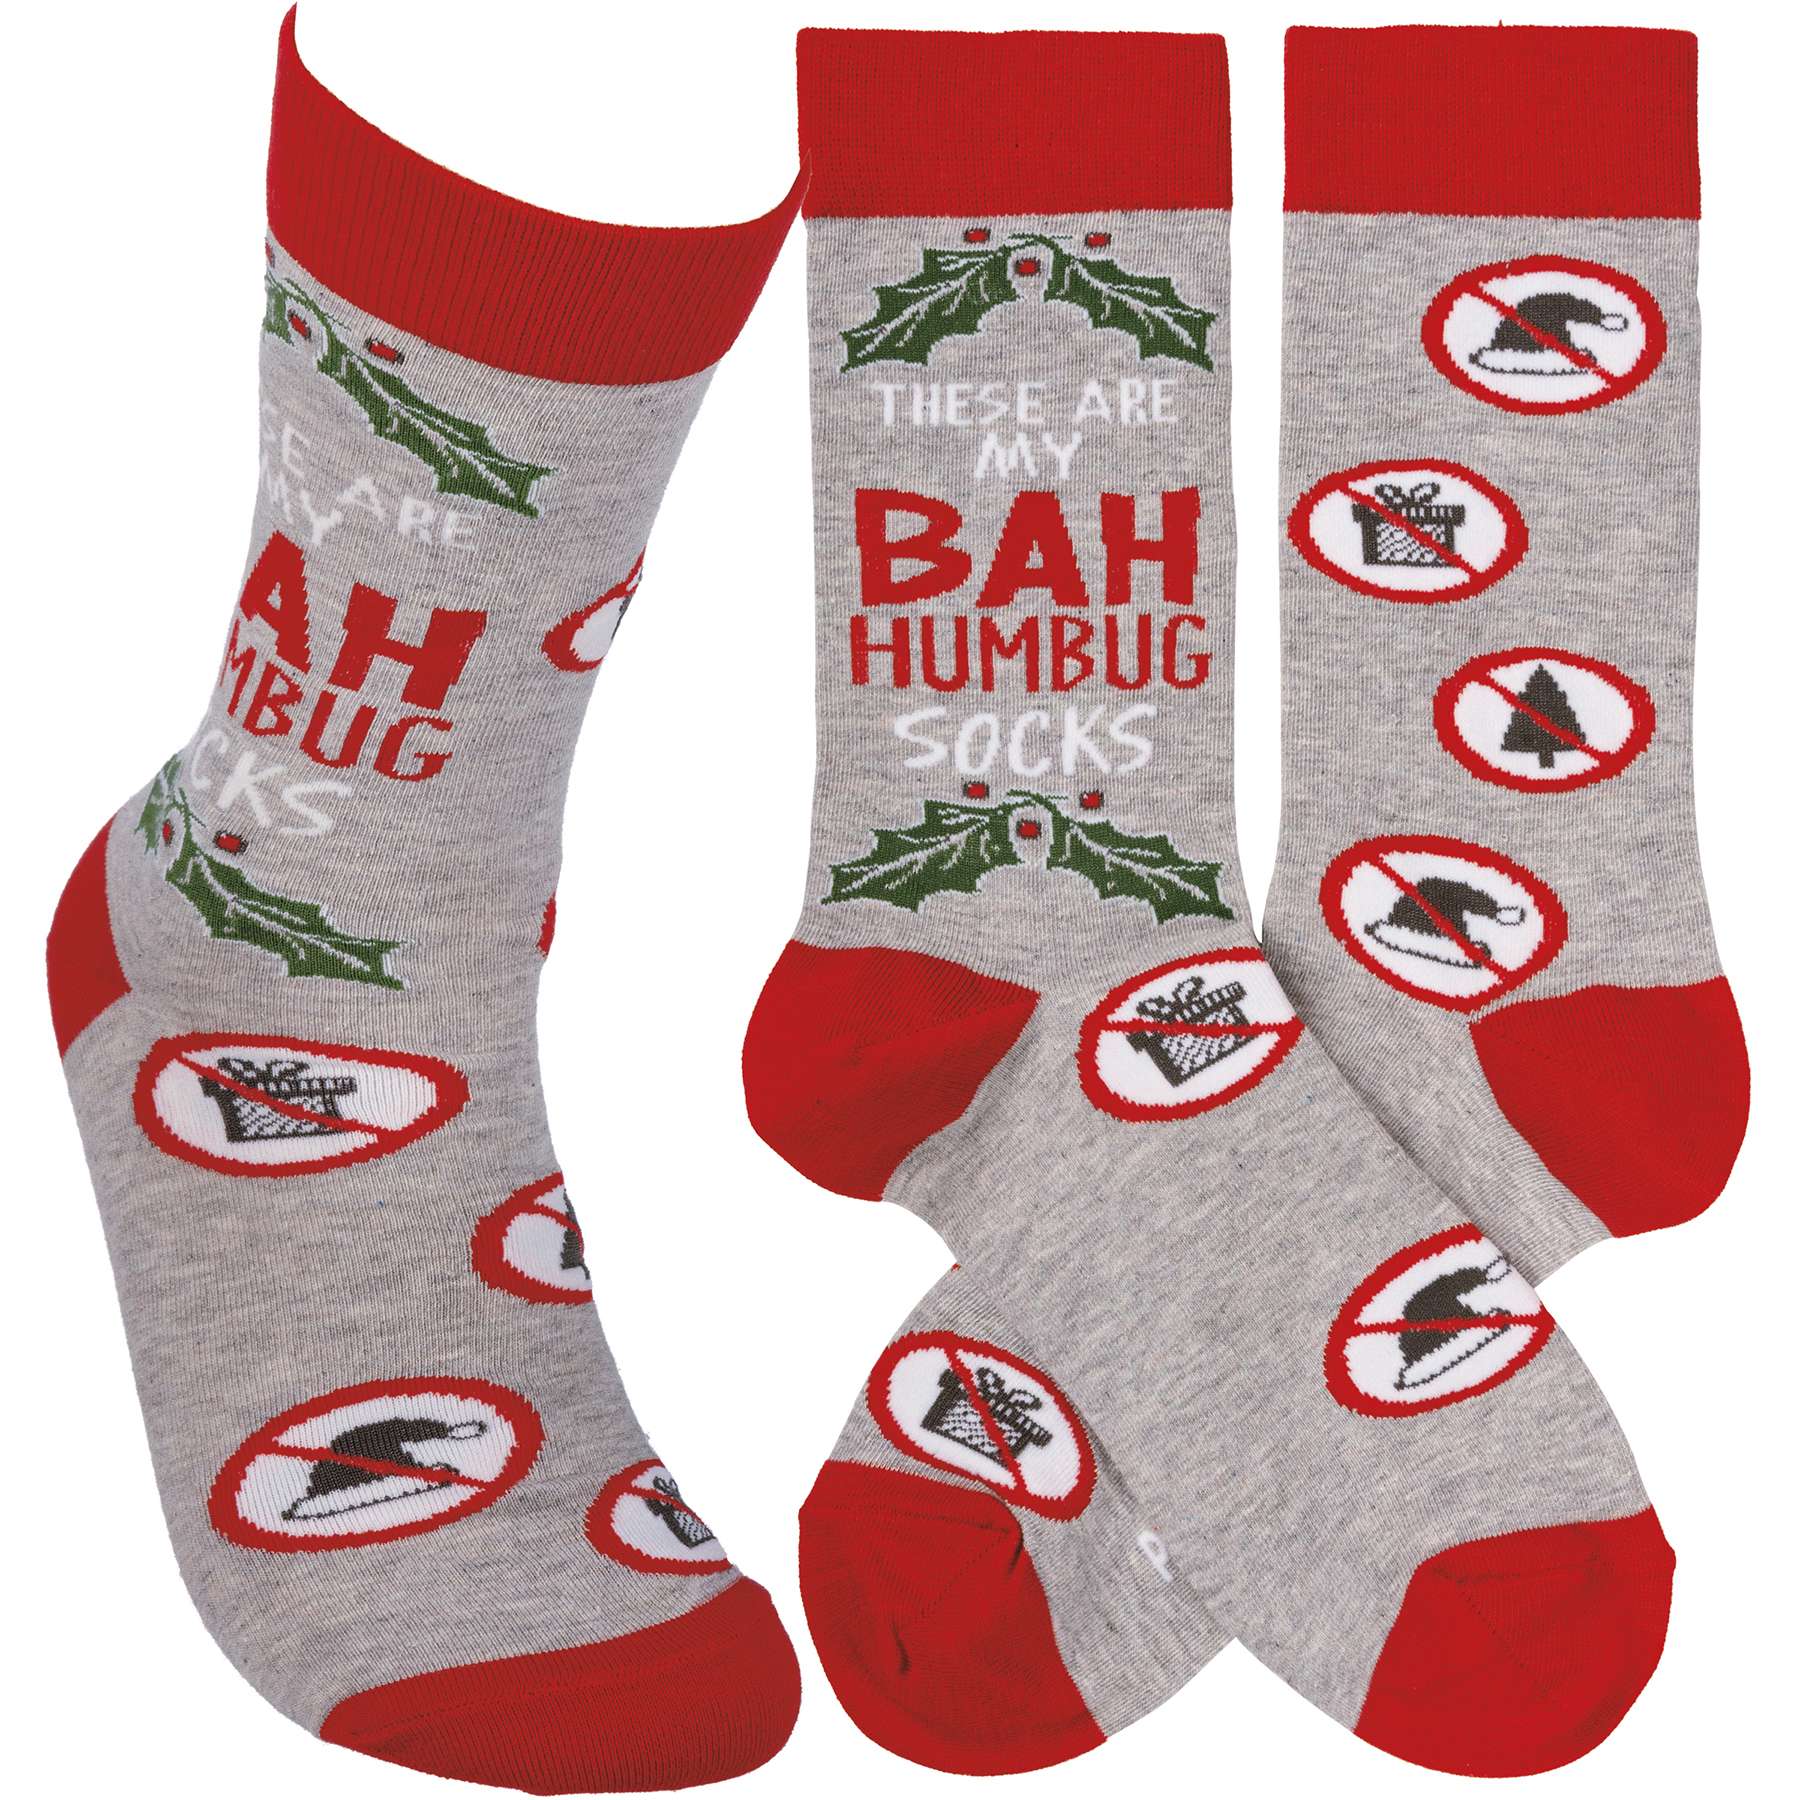 Fabulous Christmas Socks - Christmas